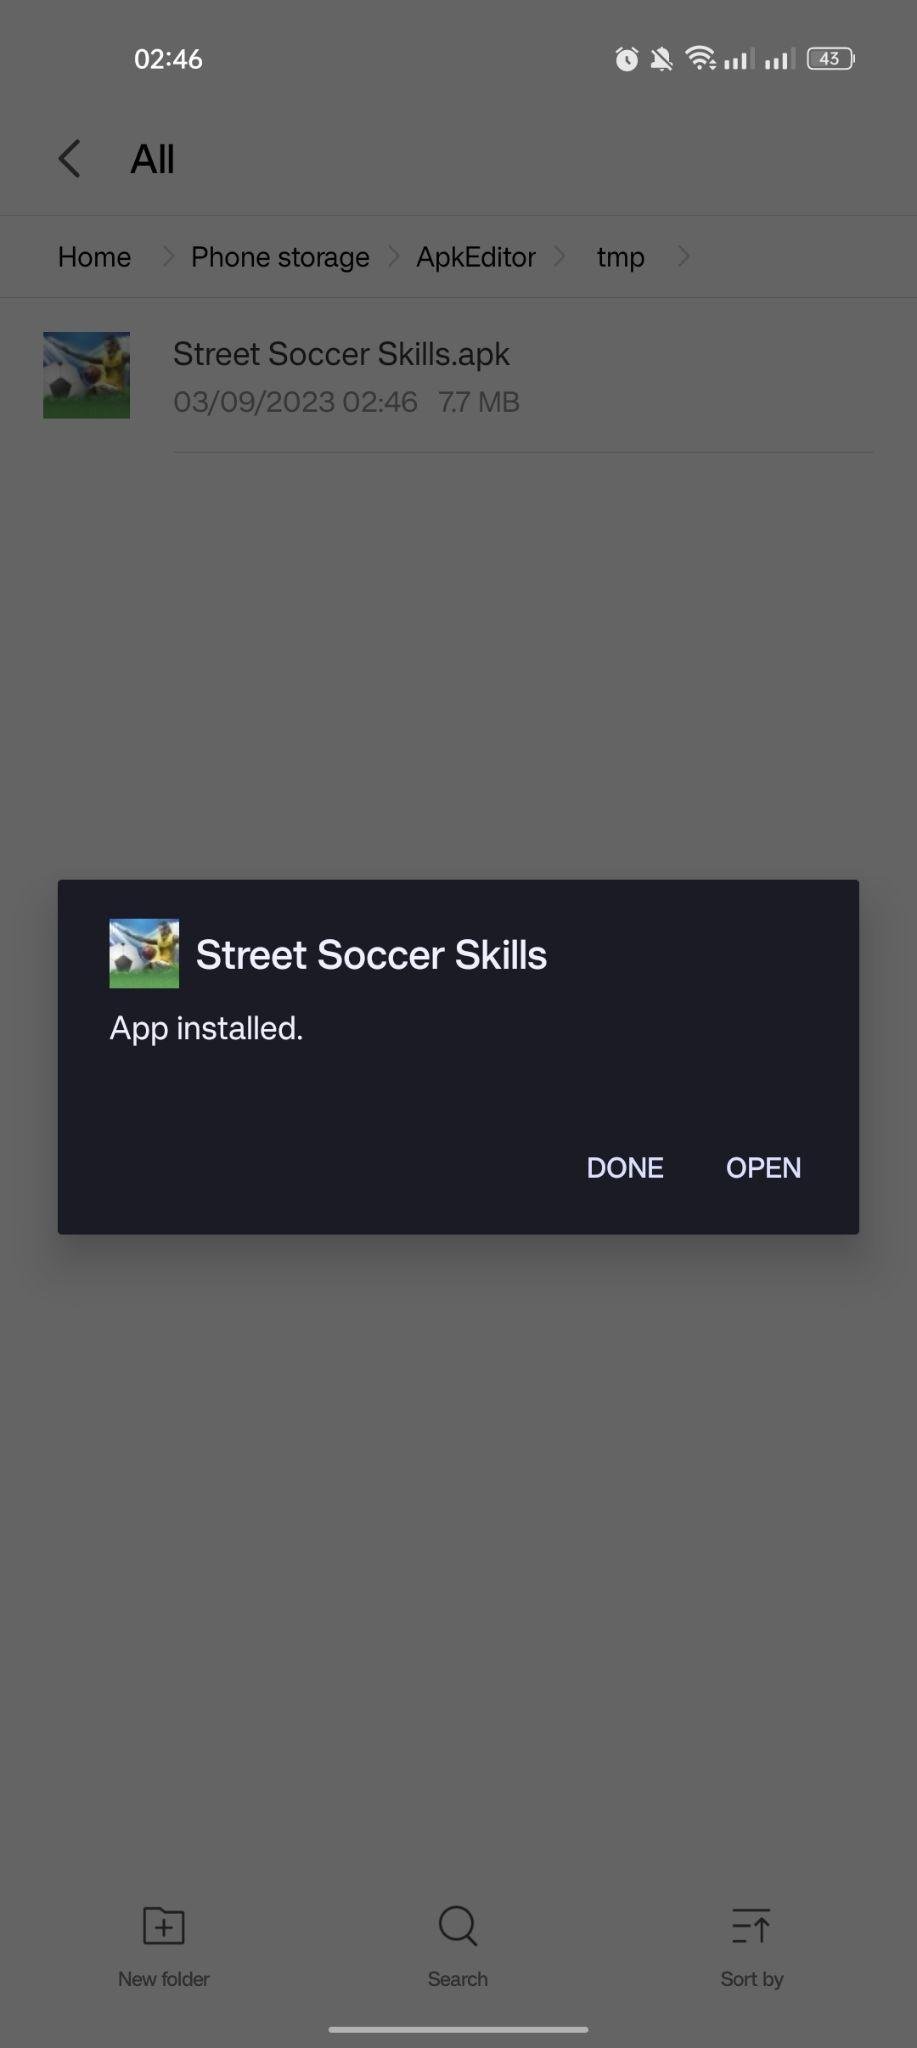 Street Soccer Skills apk installed